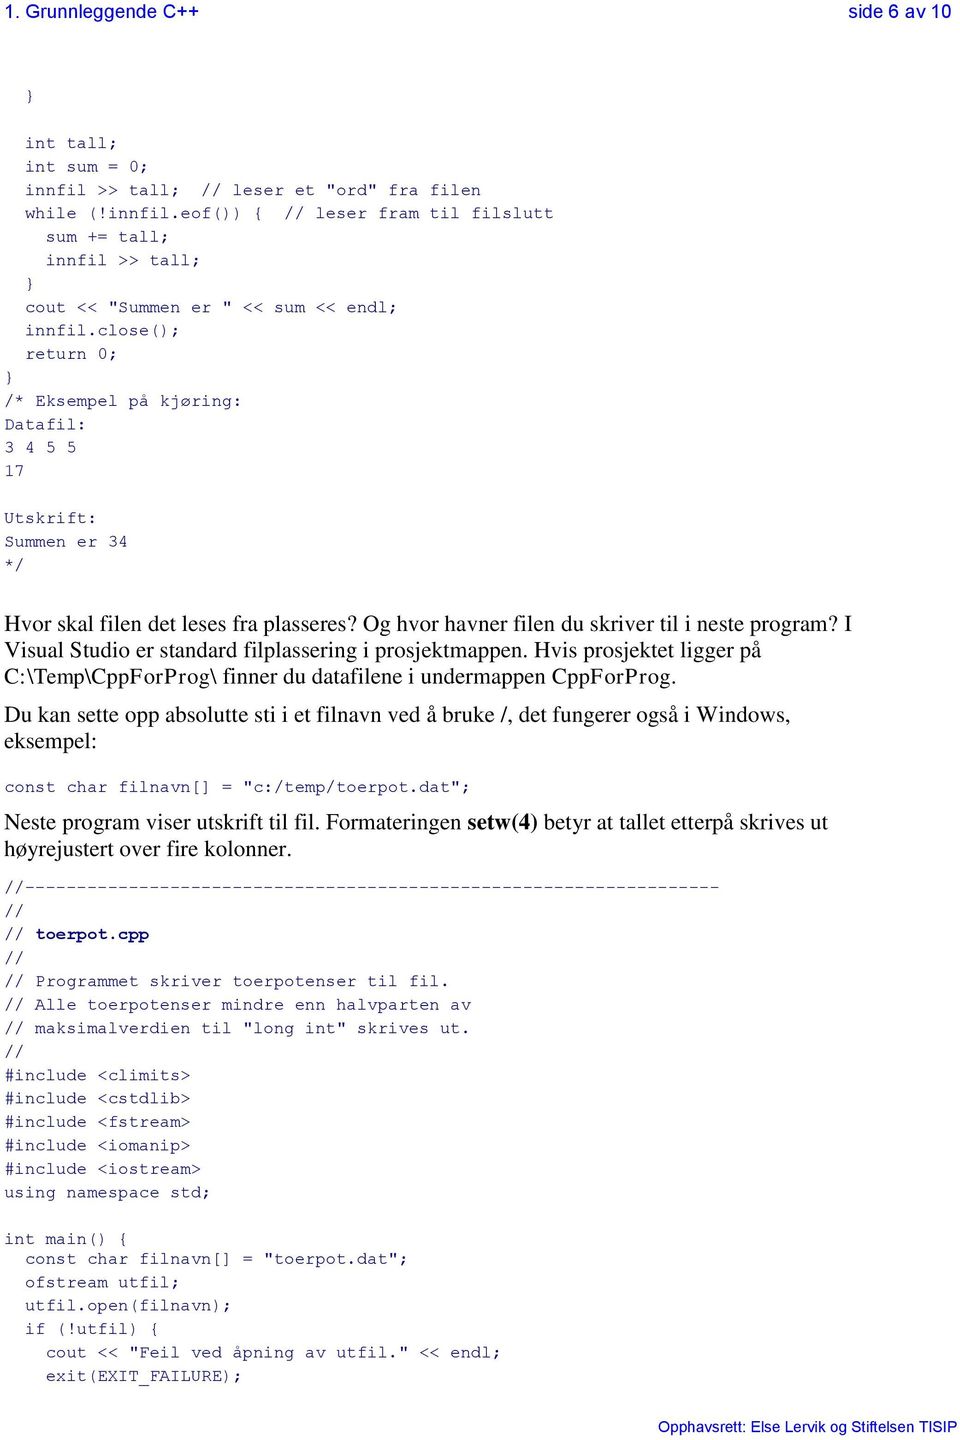 I Visual Studio er standard filplassering i prosjektmappen. Hvis prosjektet ligger på C:\Temp\CppForProg\ finner du datafilene i undermappen CppForProg.